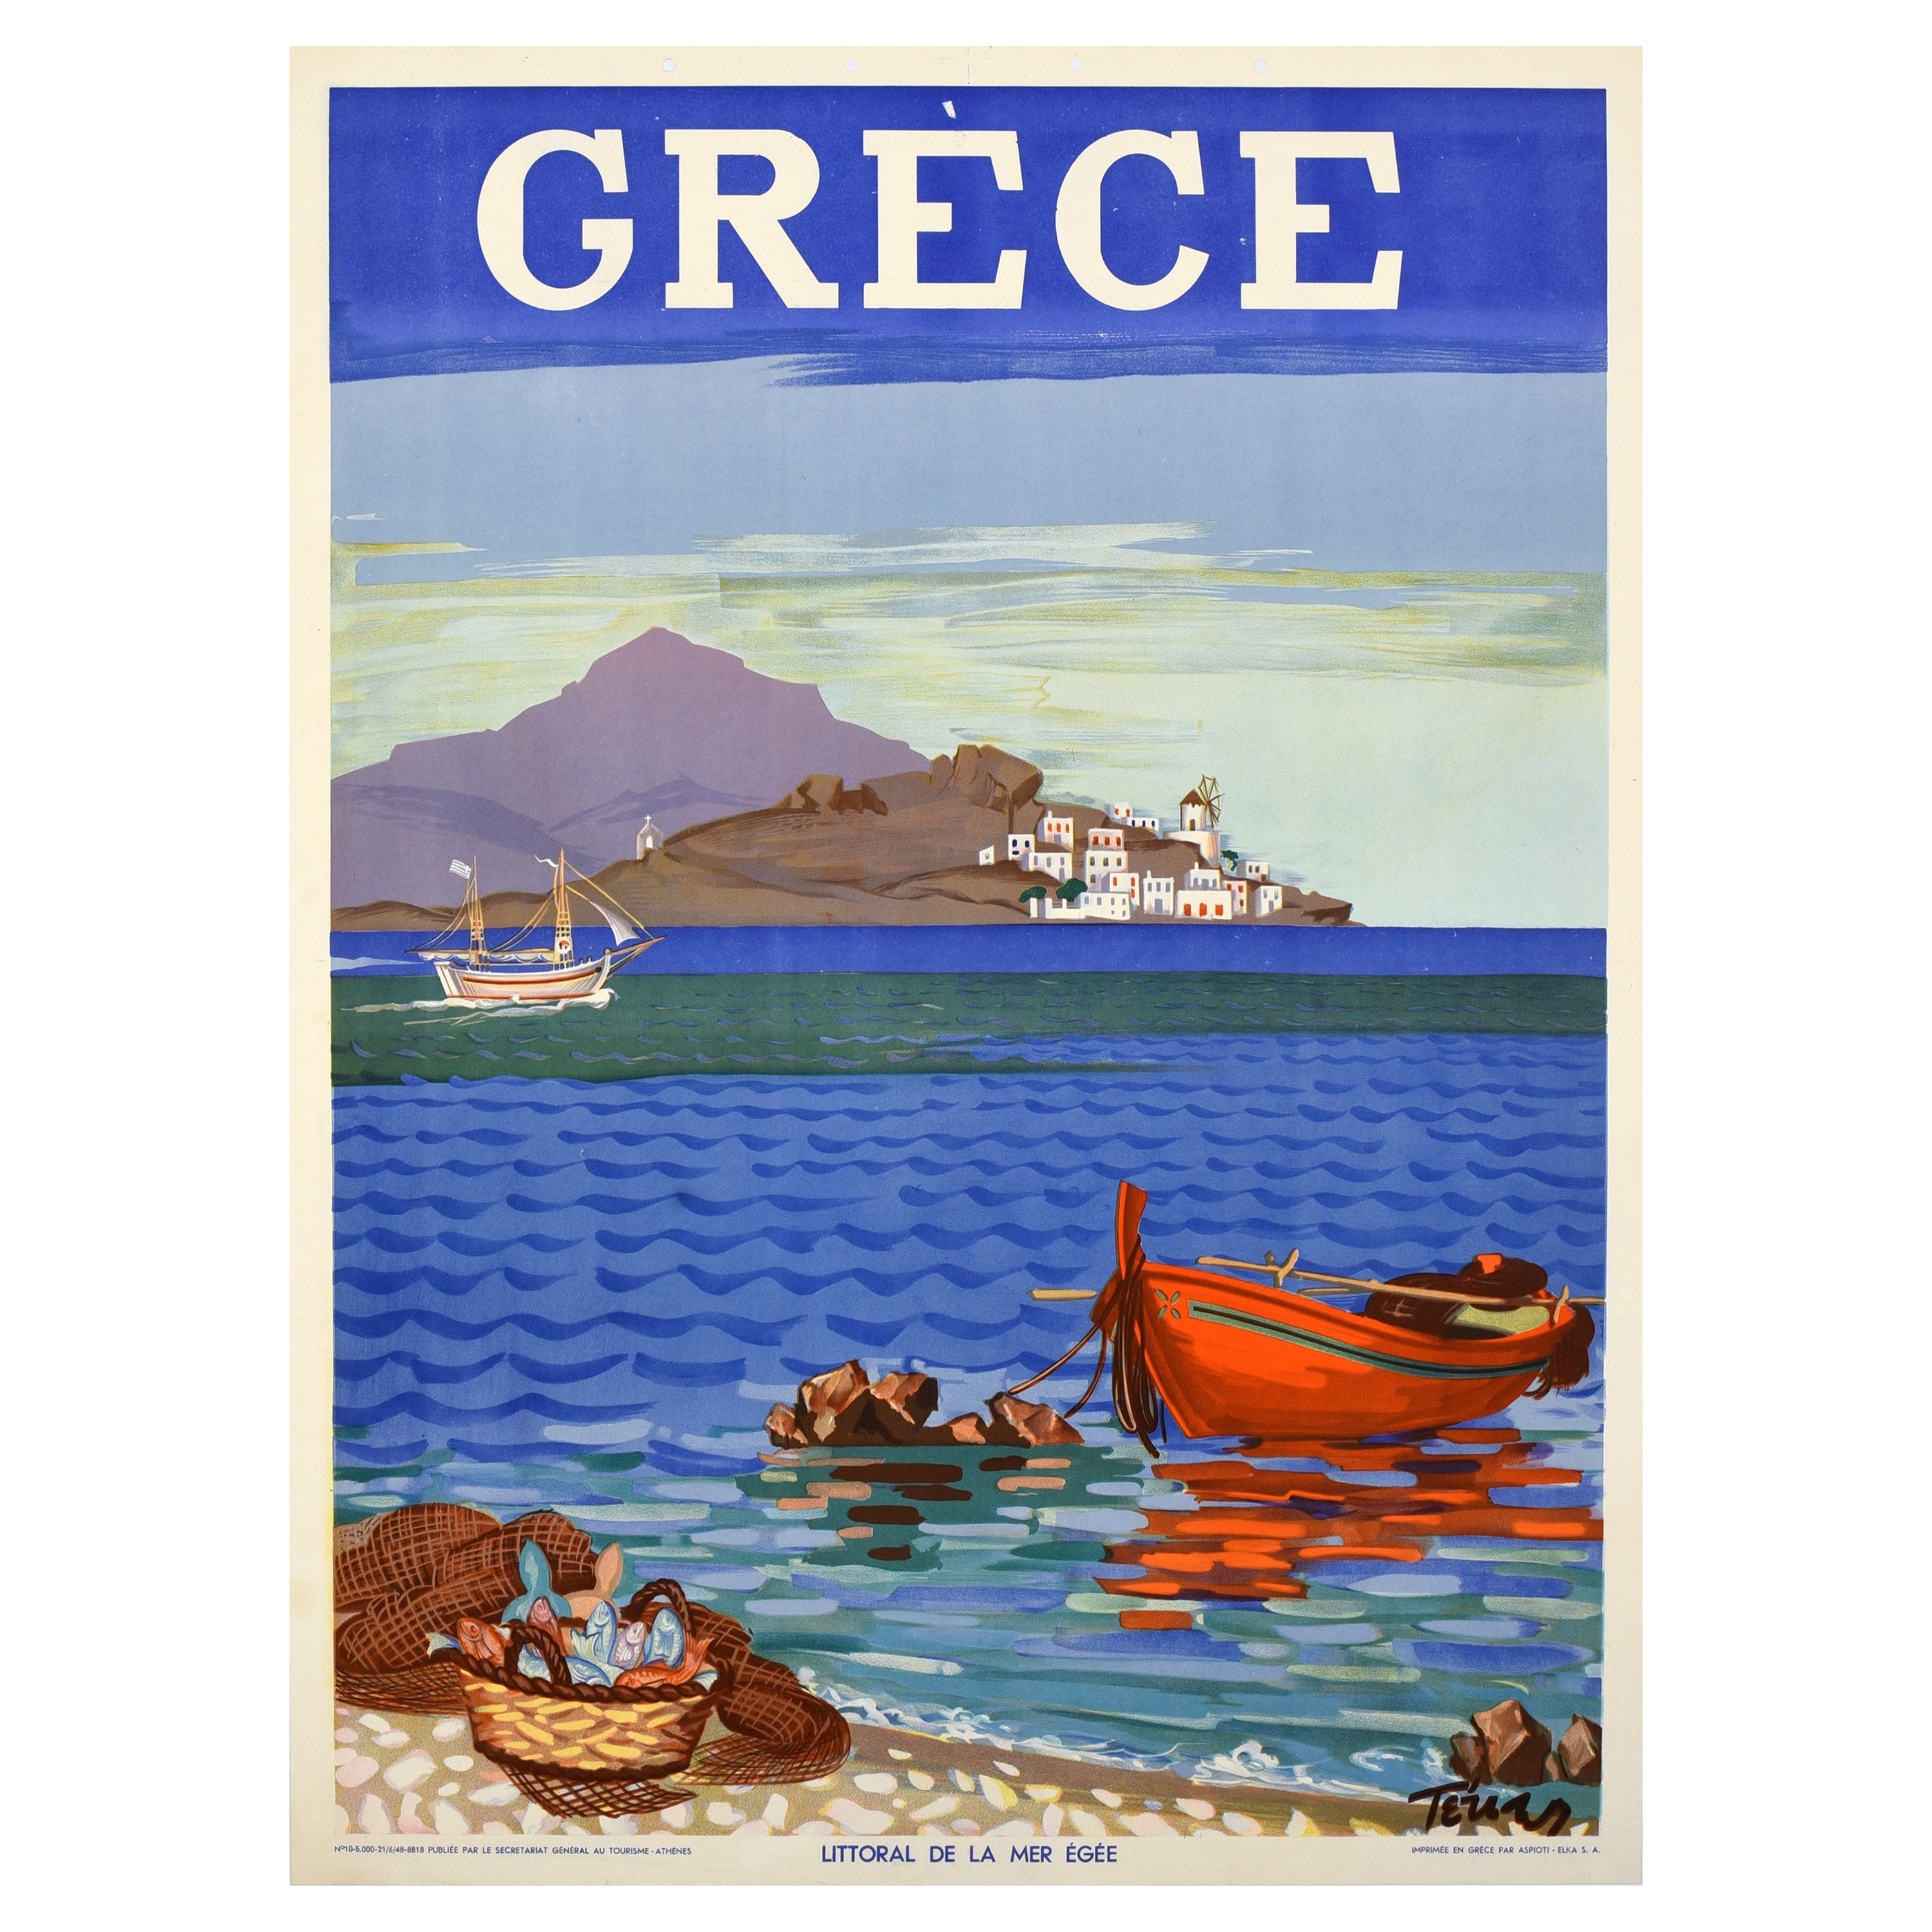 Original Vintage Travel Poster Greece Grece Aegean Coast Mediterranean Sea  For Sale